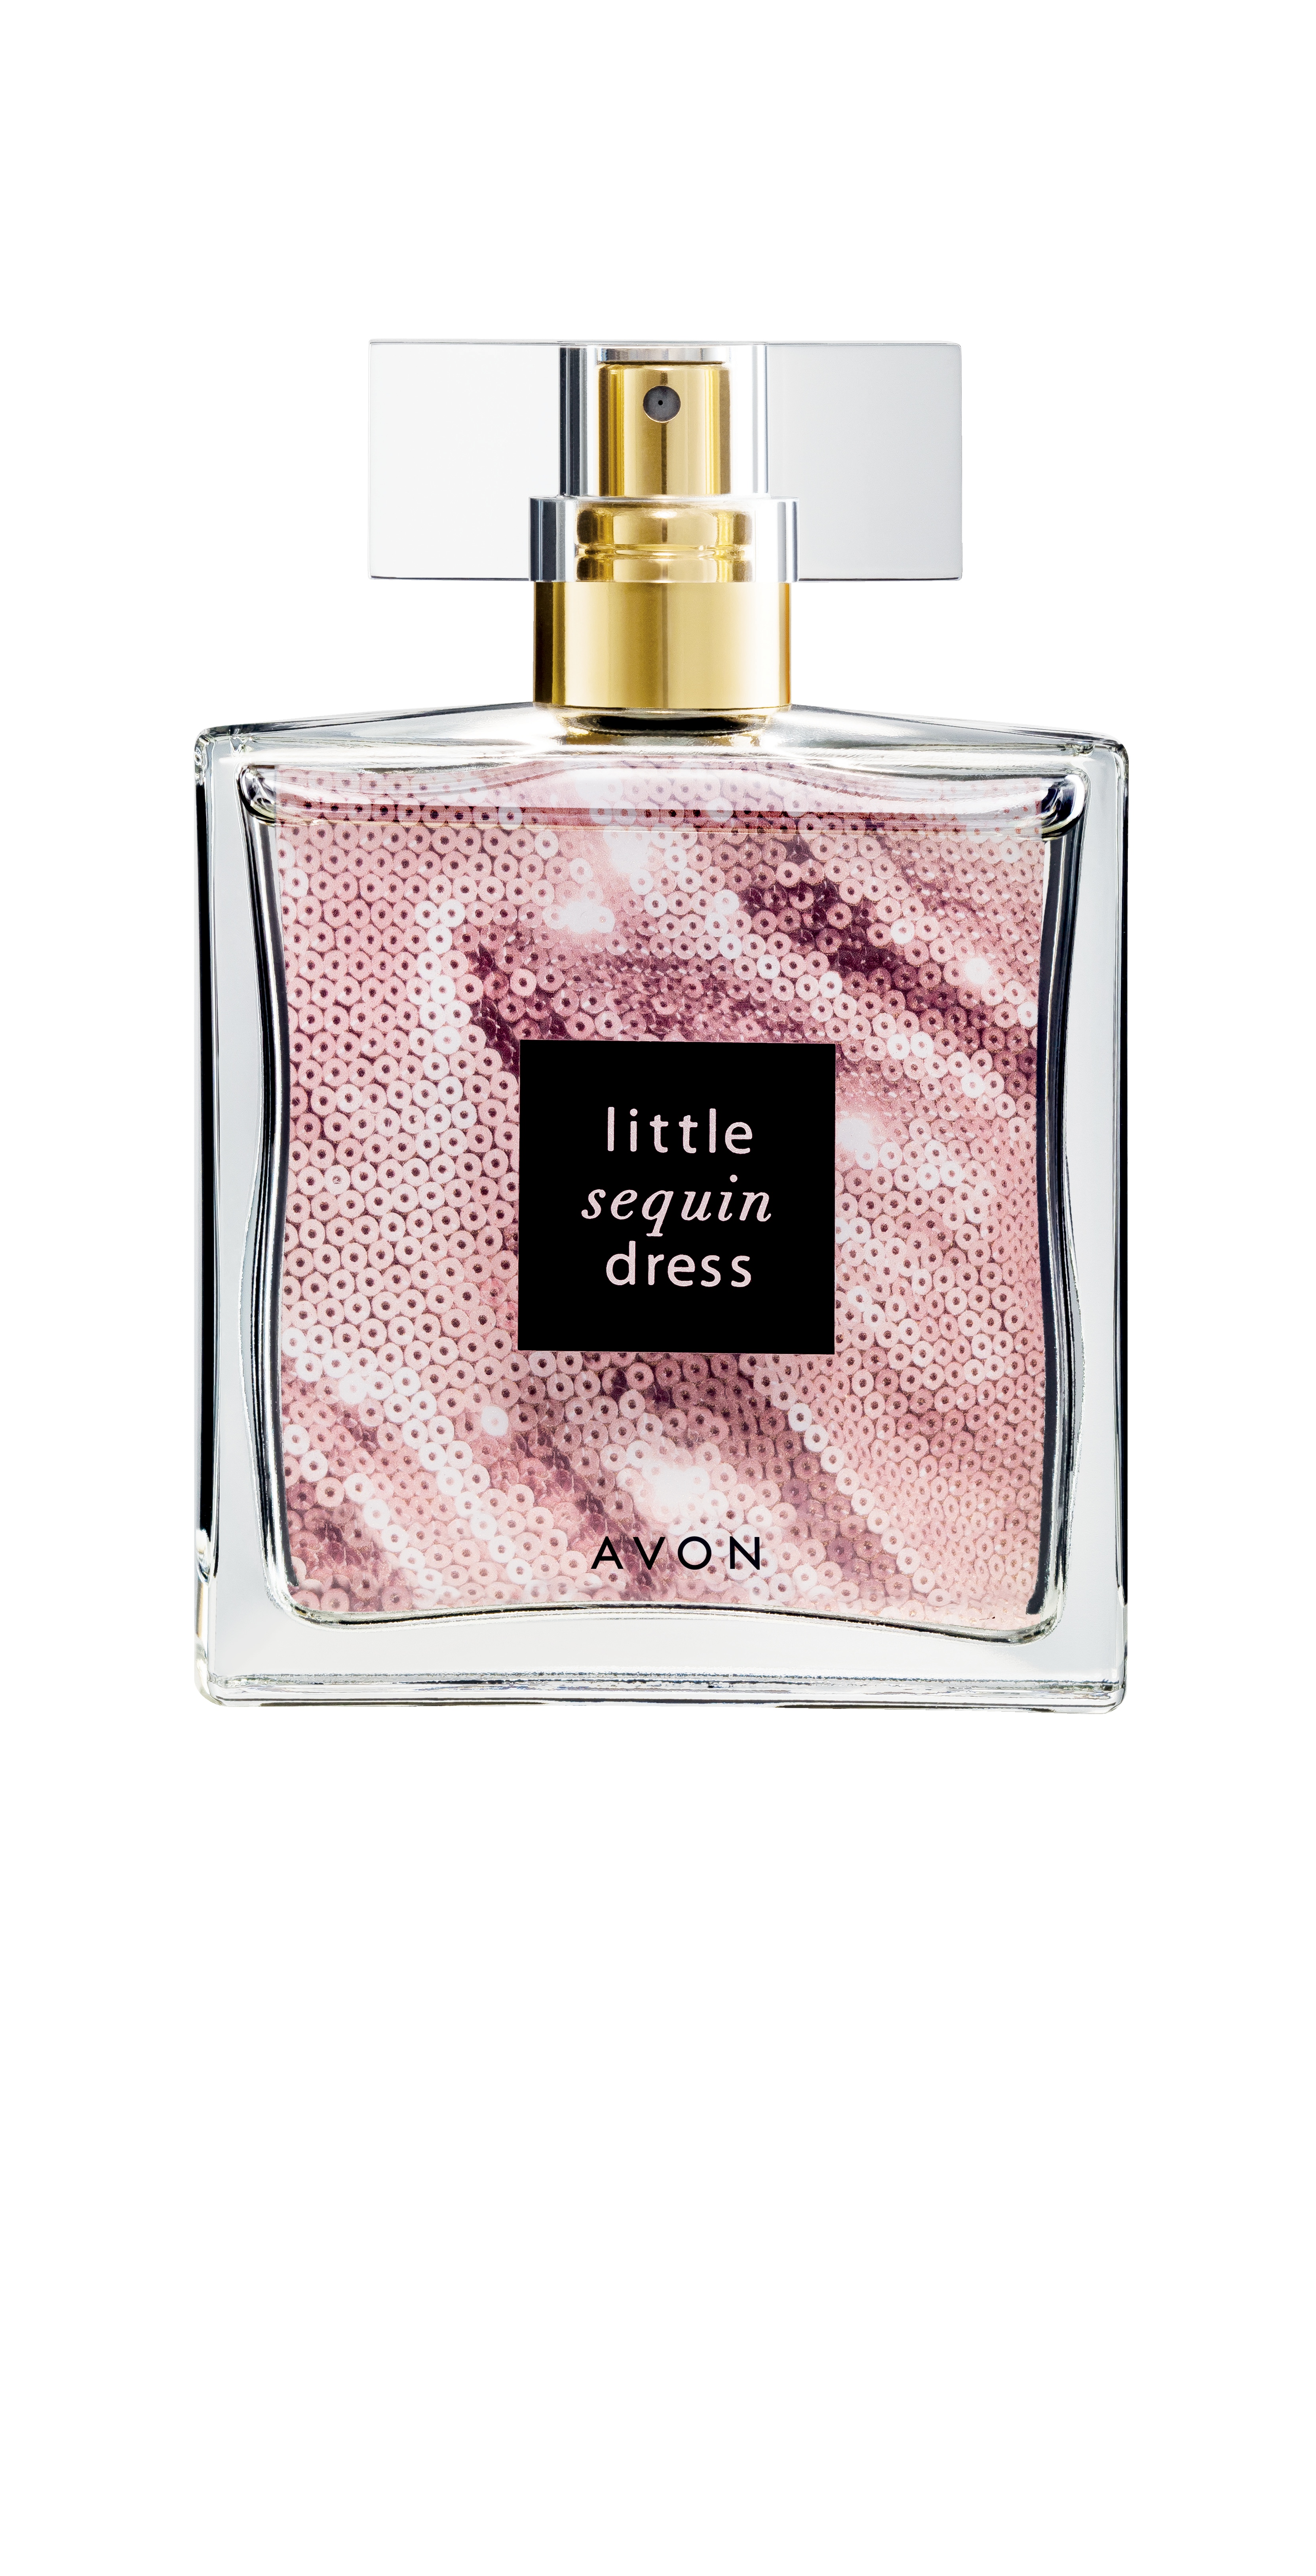 little_sequin_dress_parfum_4099_ft_0658_5.jpg